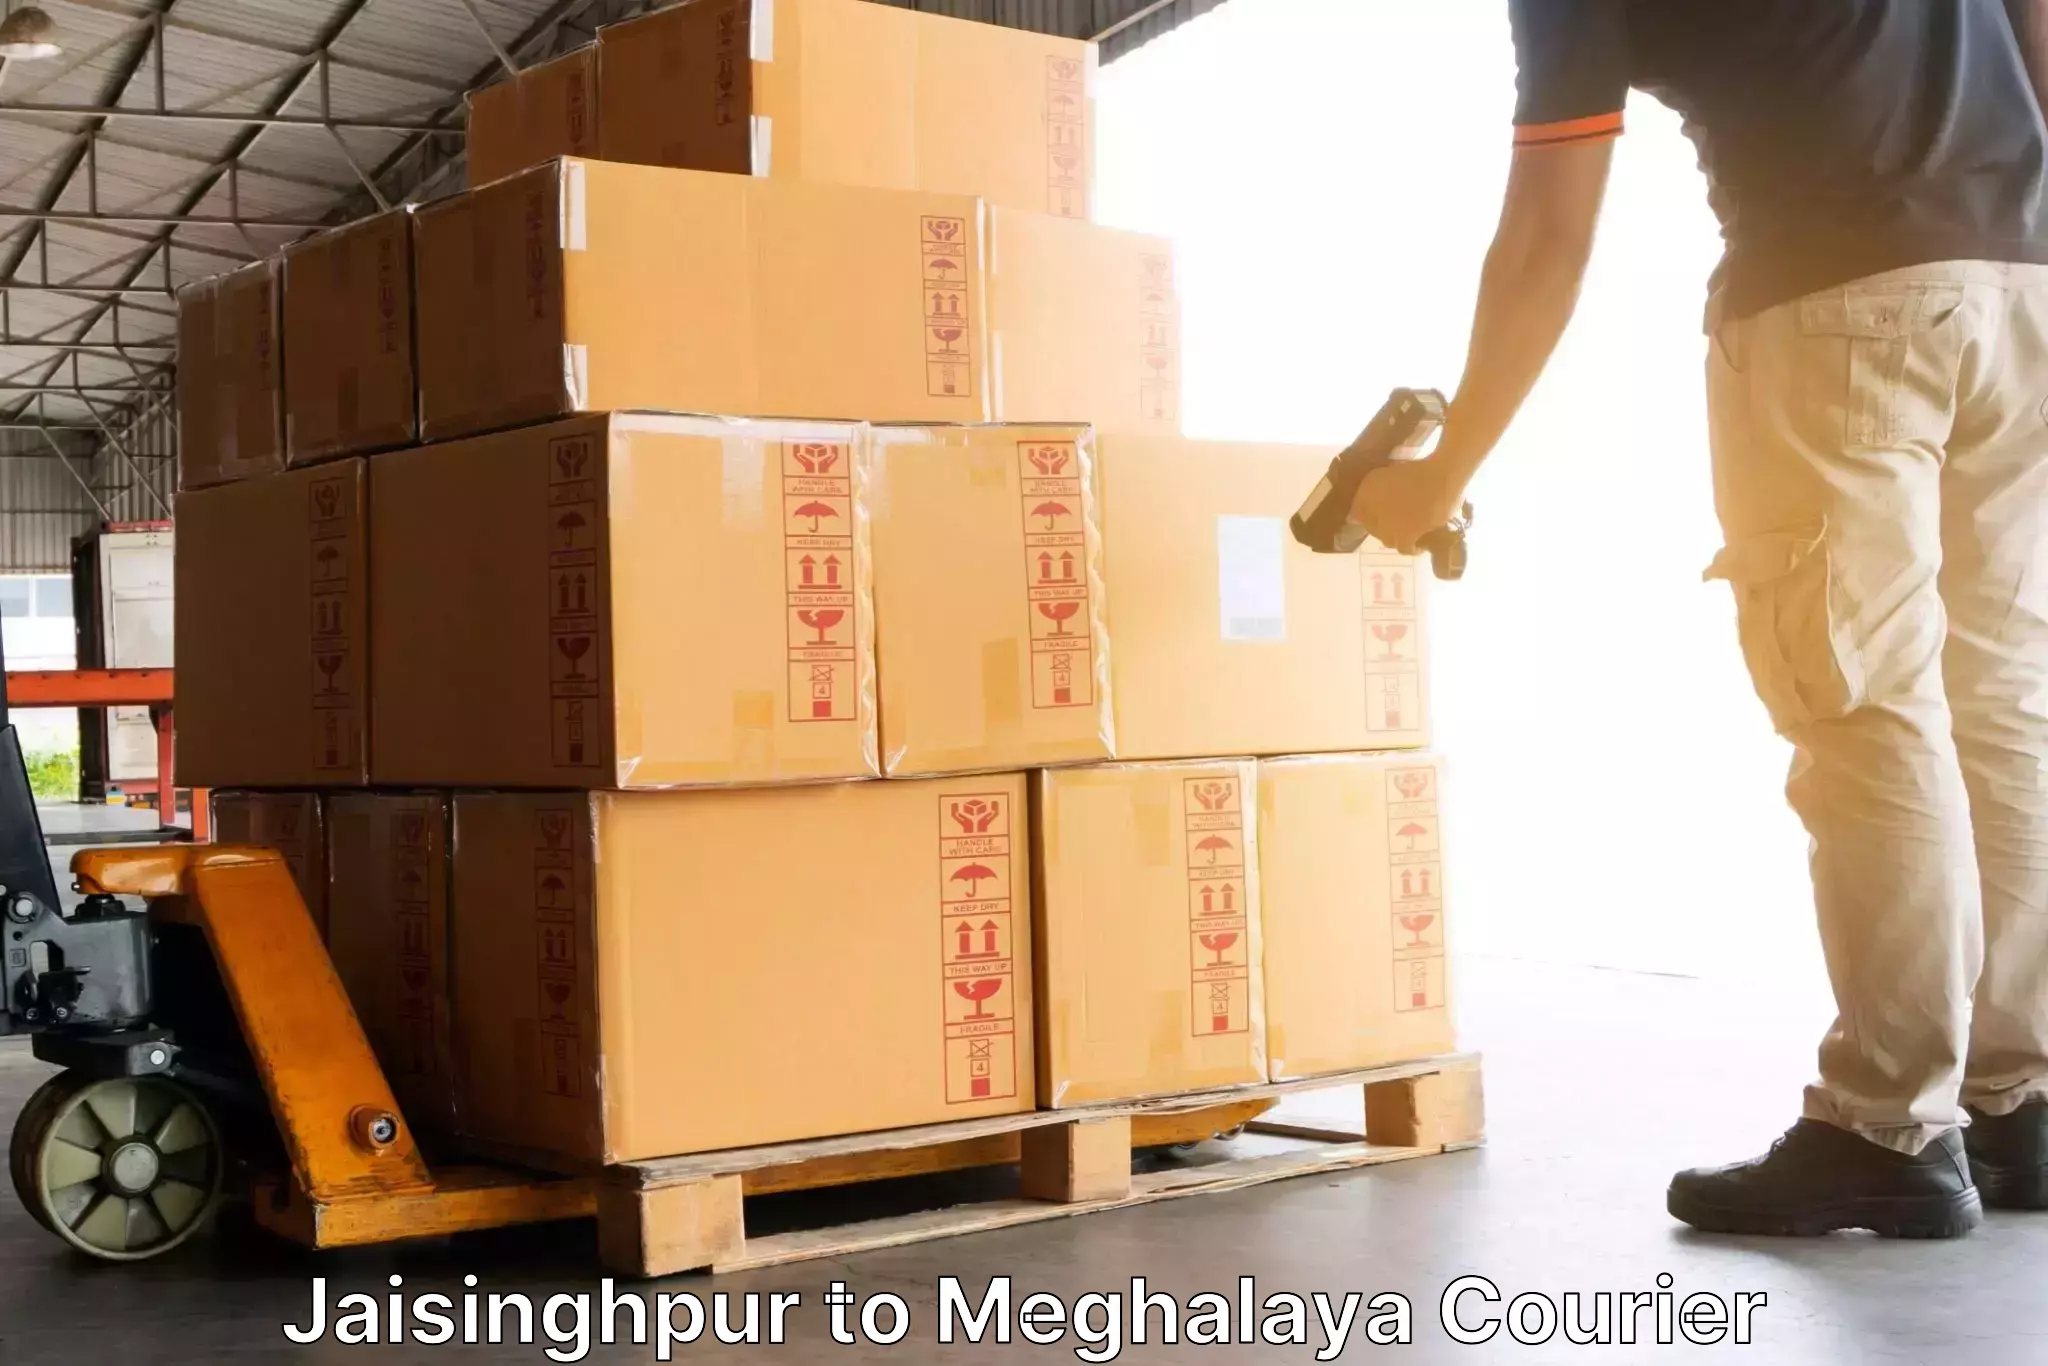 Premium courier solutions Jaisinghpur to Tura